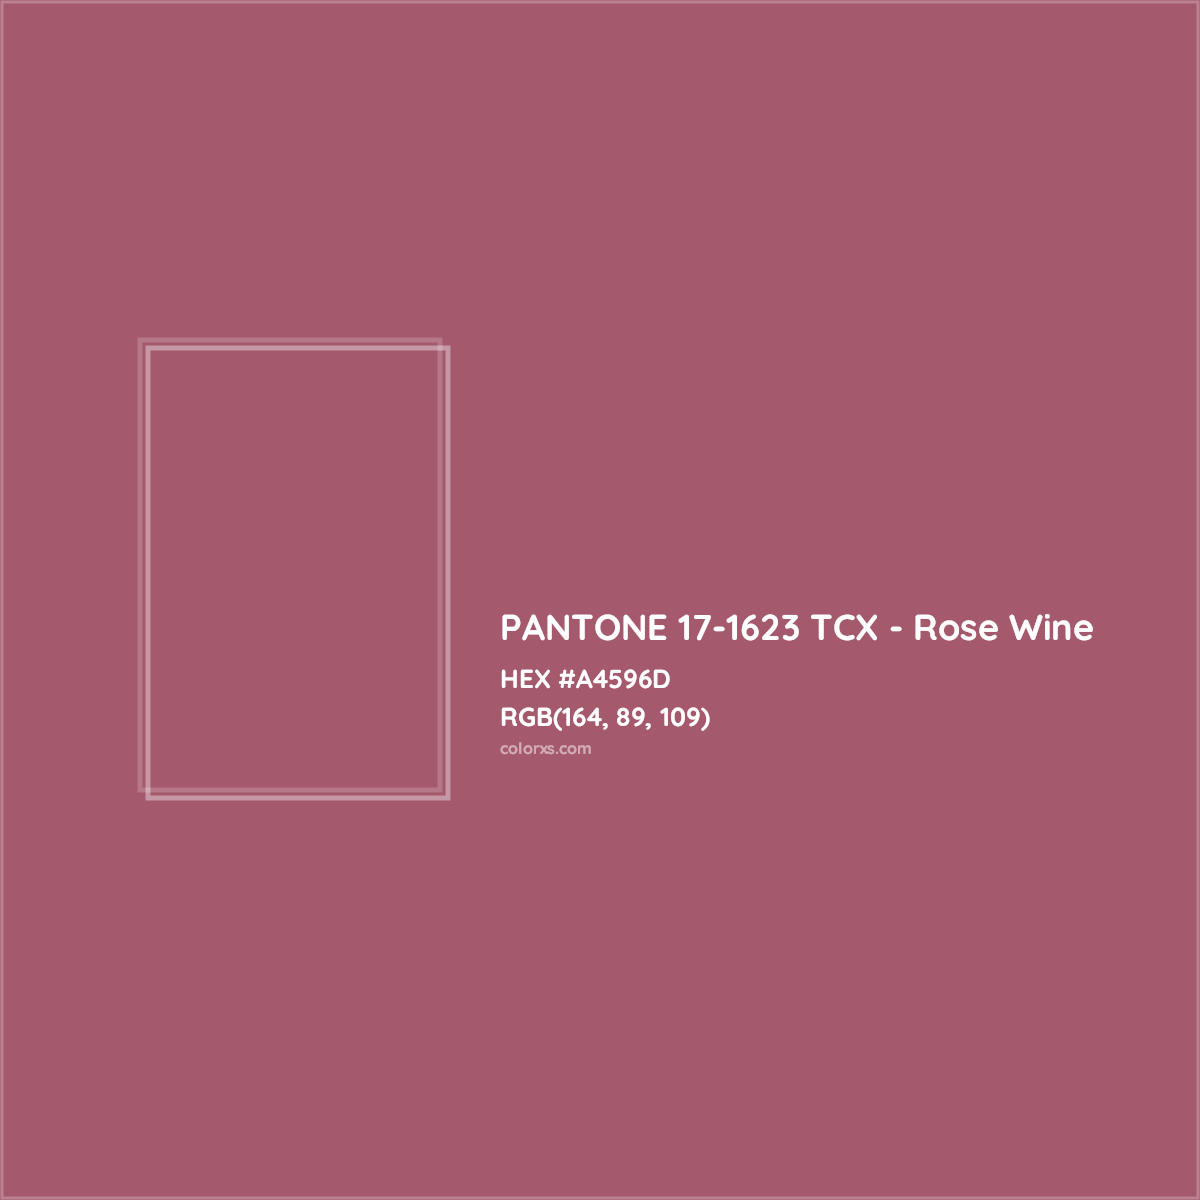 HEX #A4596D PANTONE 17-1623 TCX - Rose Wine CMS Pantone TCX - Color Code